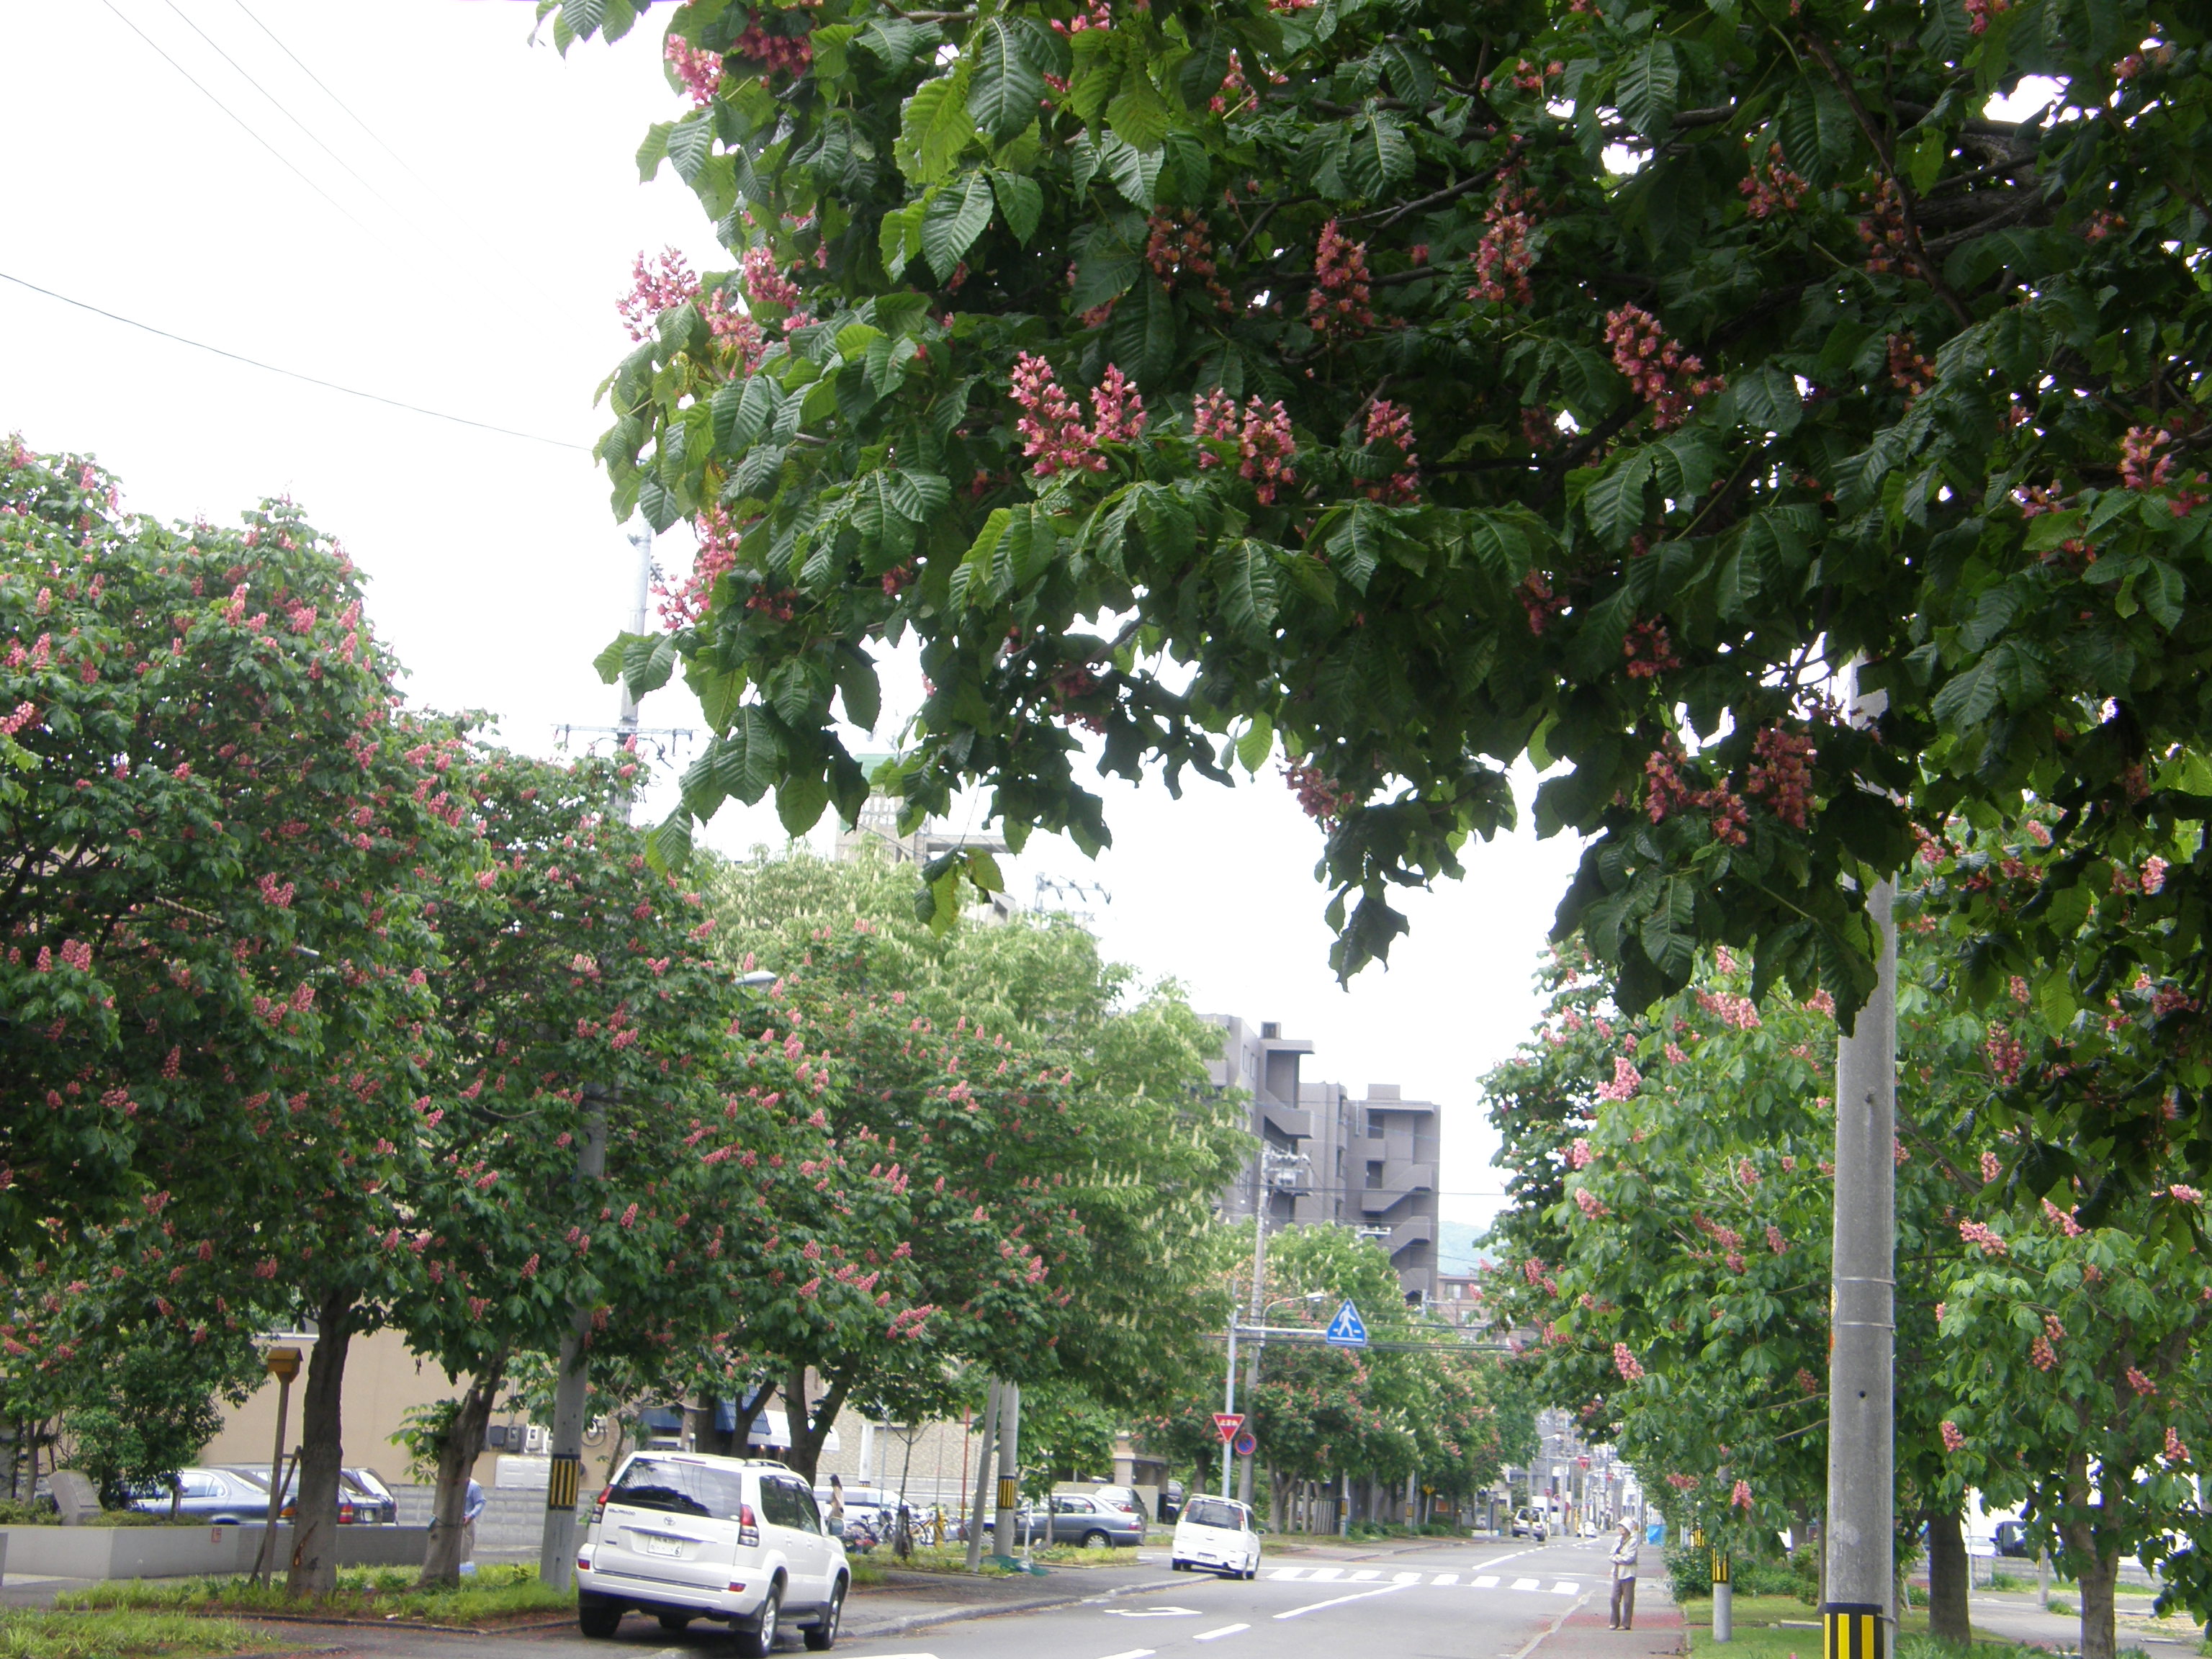 マロニエの花が咲いていたよ 赤い紅いお花だったよ 北海道の旅行記 ブログ By こざくらさん フォートラベル